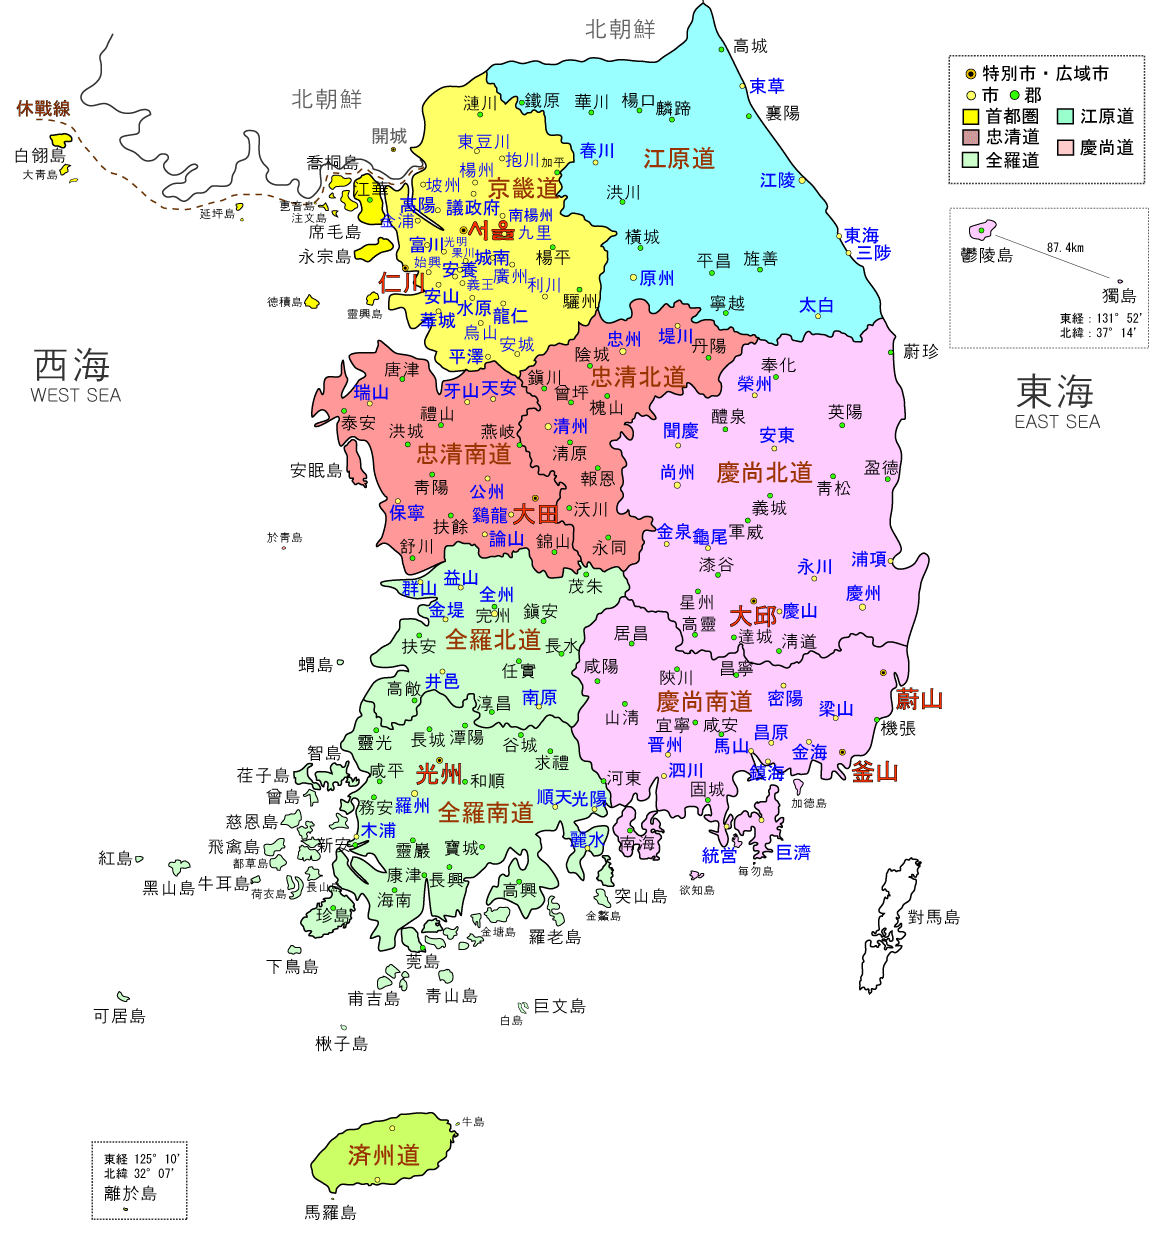 韩国行政区域的划分